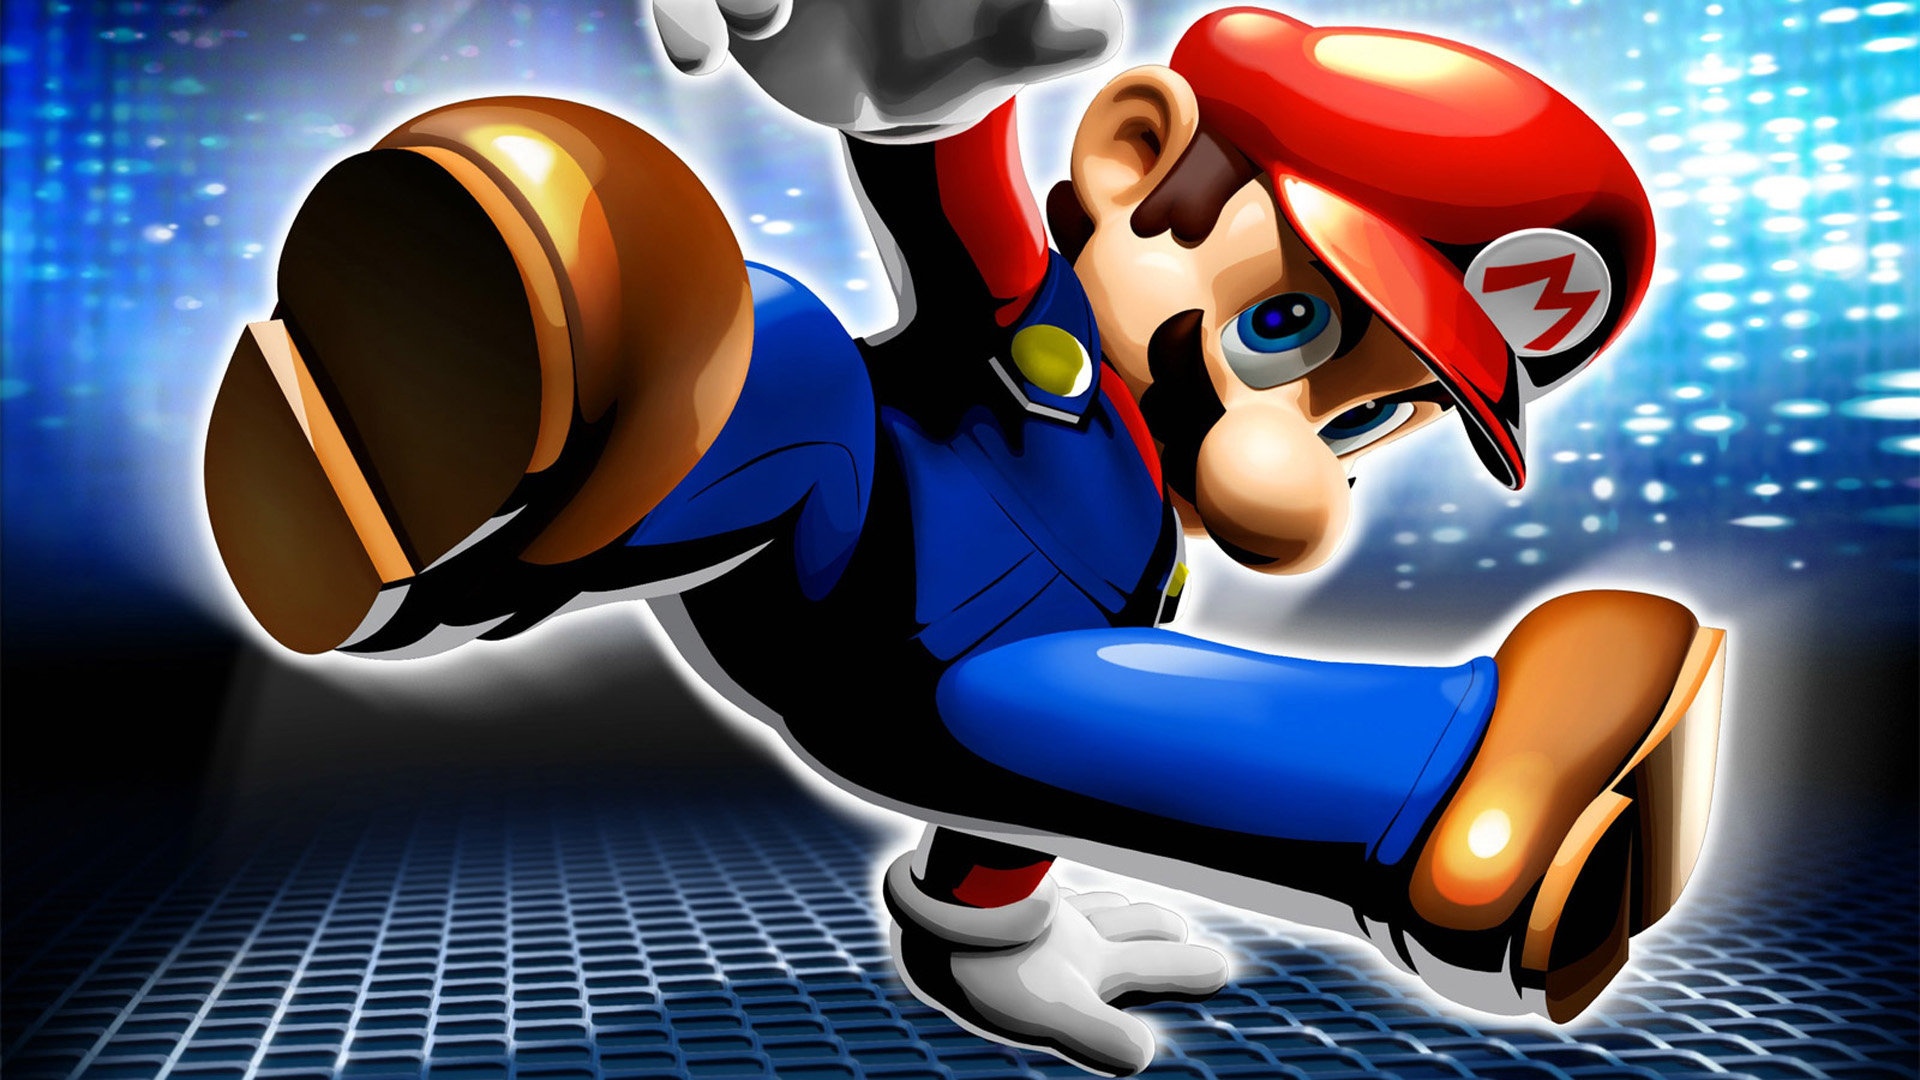 Download Full Hd Super Mario 64 Computer Background - Super Mario Imagenes Full Hd - HD Wallpaper 